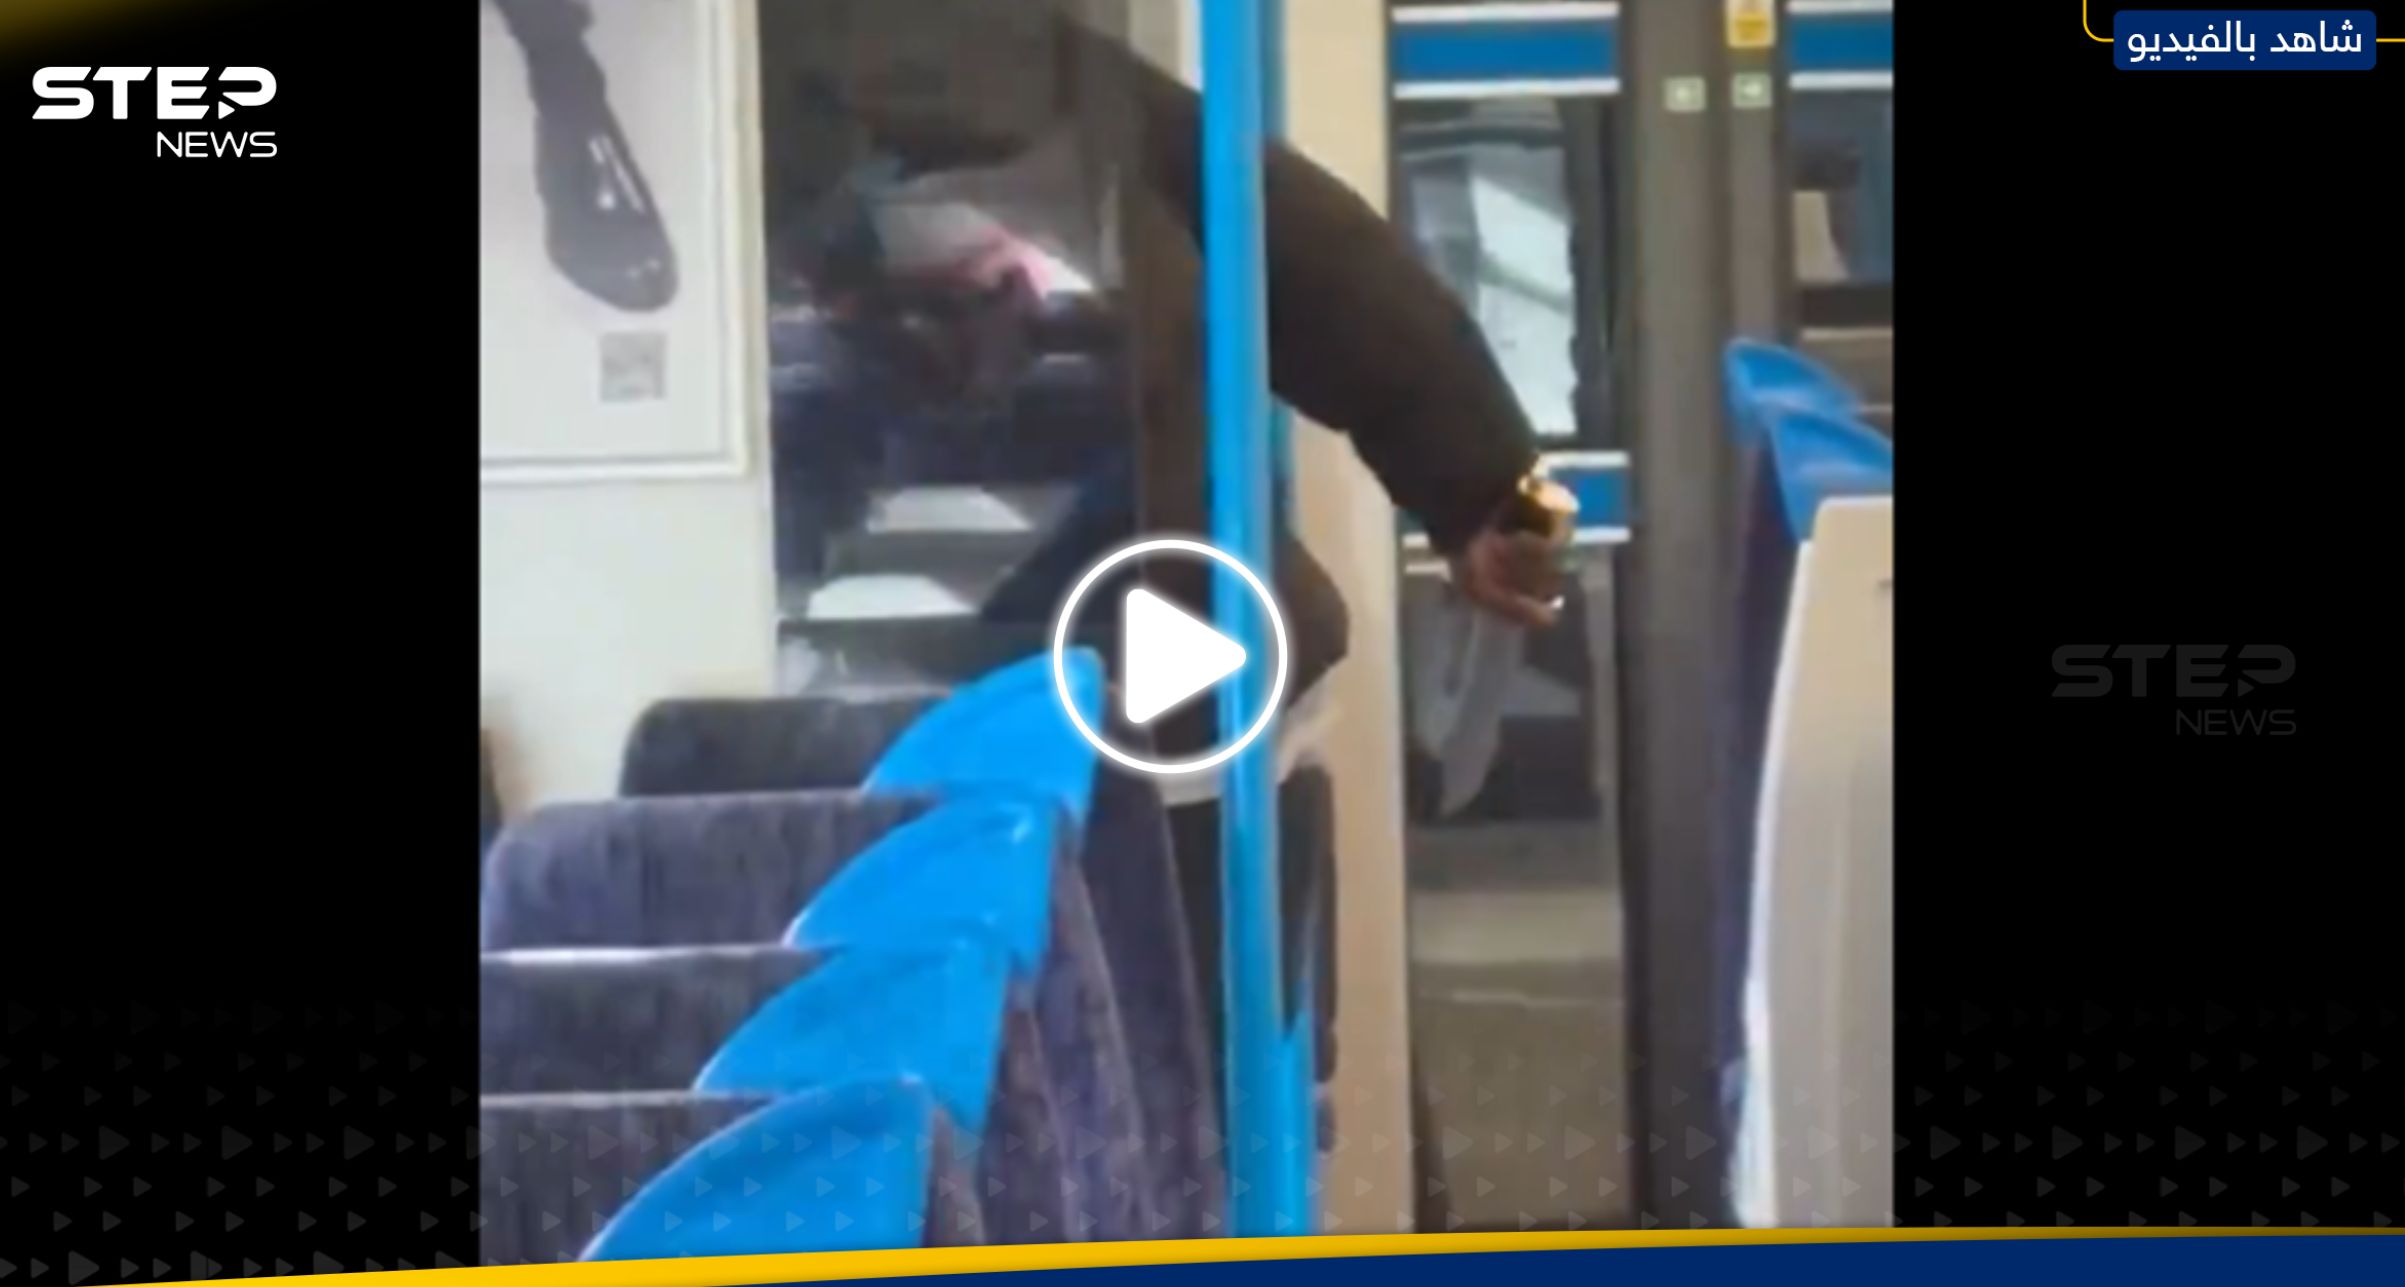 شاهد مسلح يطعن شخص بآلة حادة داخل قطار في بريطانيا والركاب يتفرجون